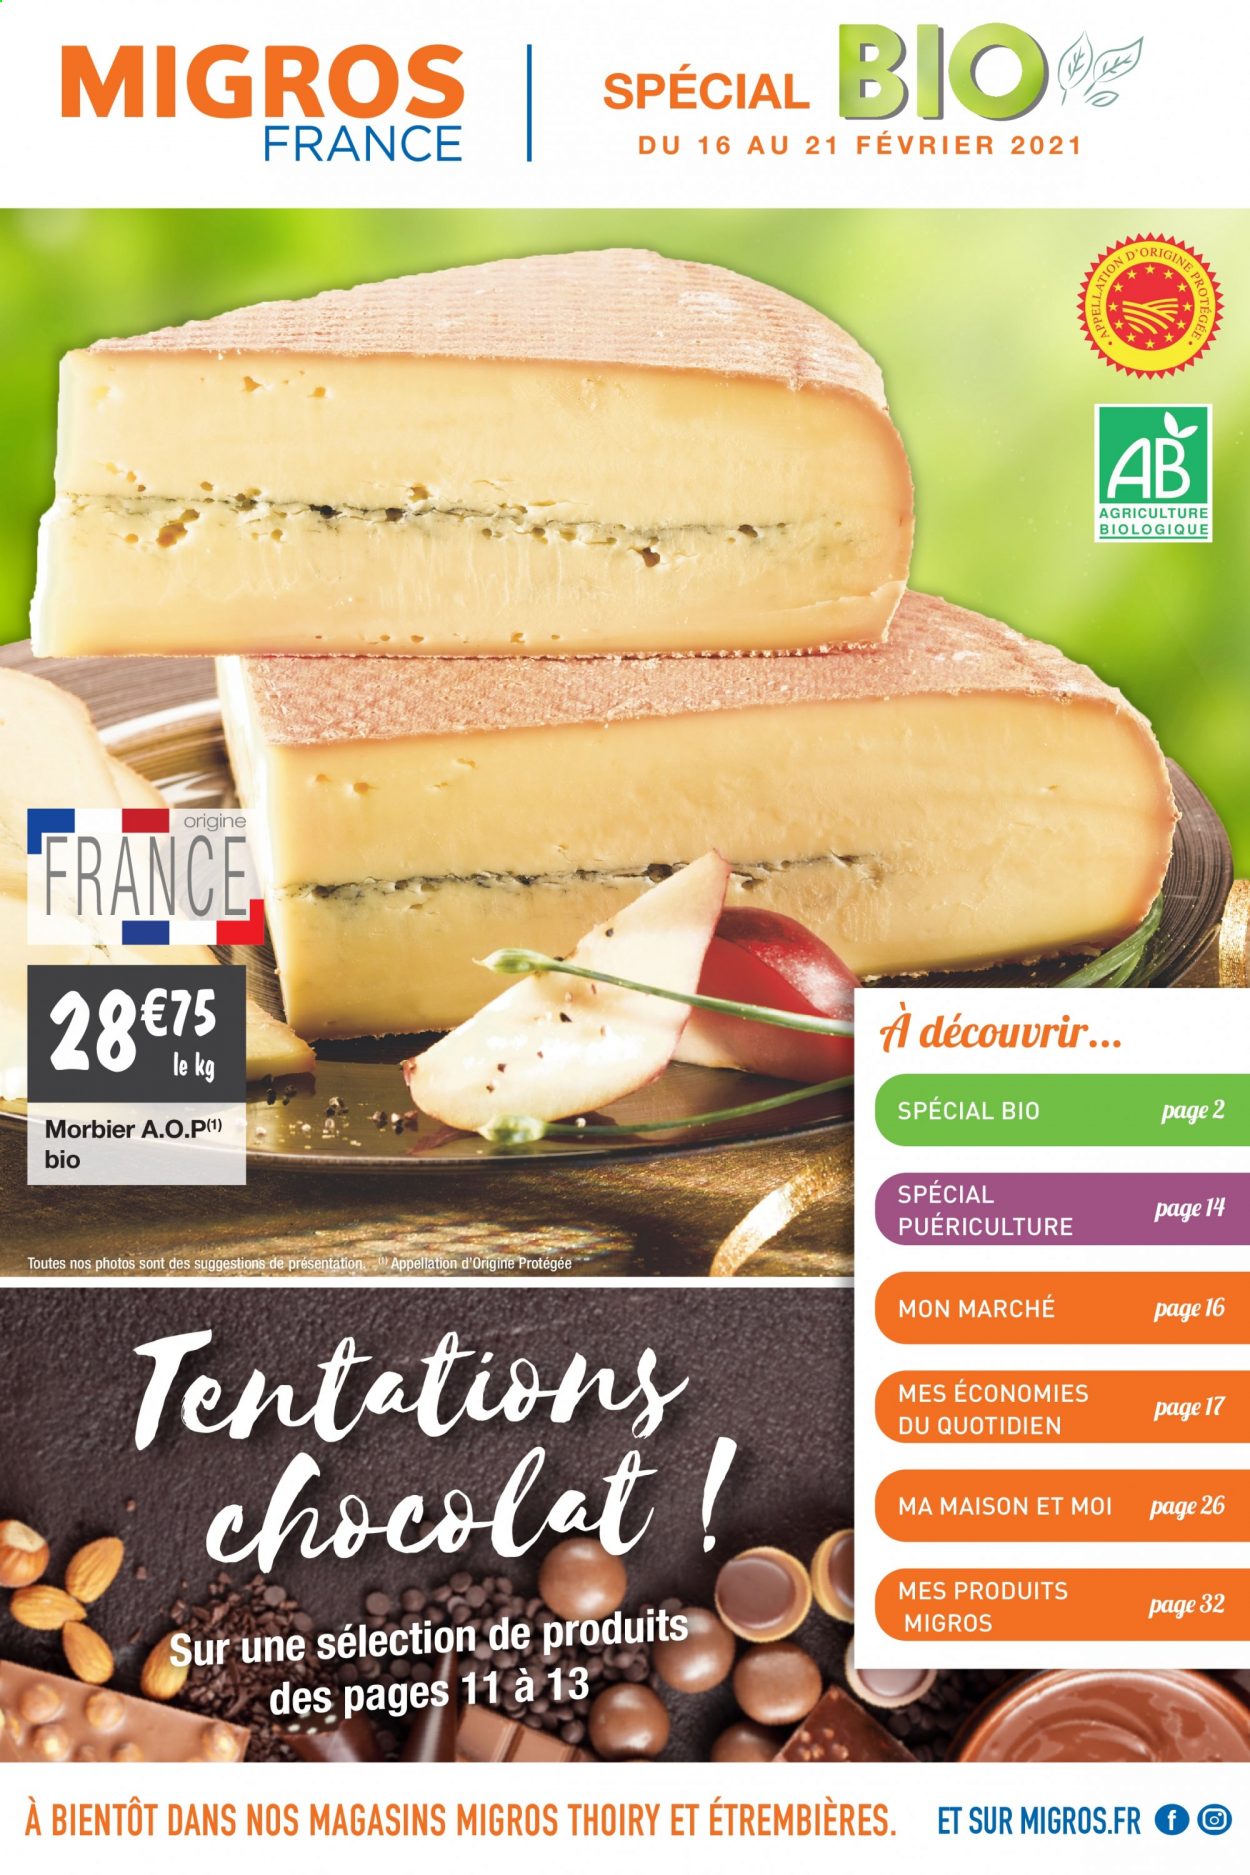 thumbnail - Catalogue Migros France - 16/02/2021 - 21/02/2021 - Produits soldés - fromage, Morbier, chocolat, maison. Page 1.